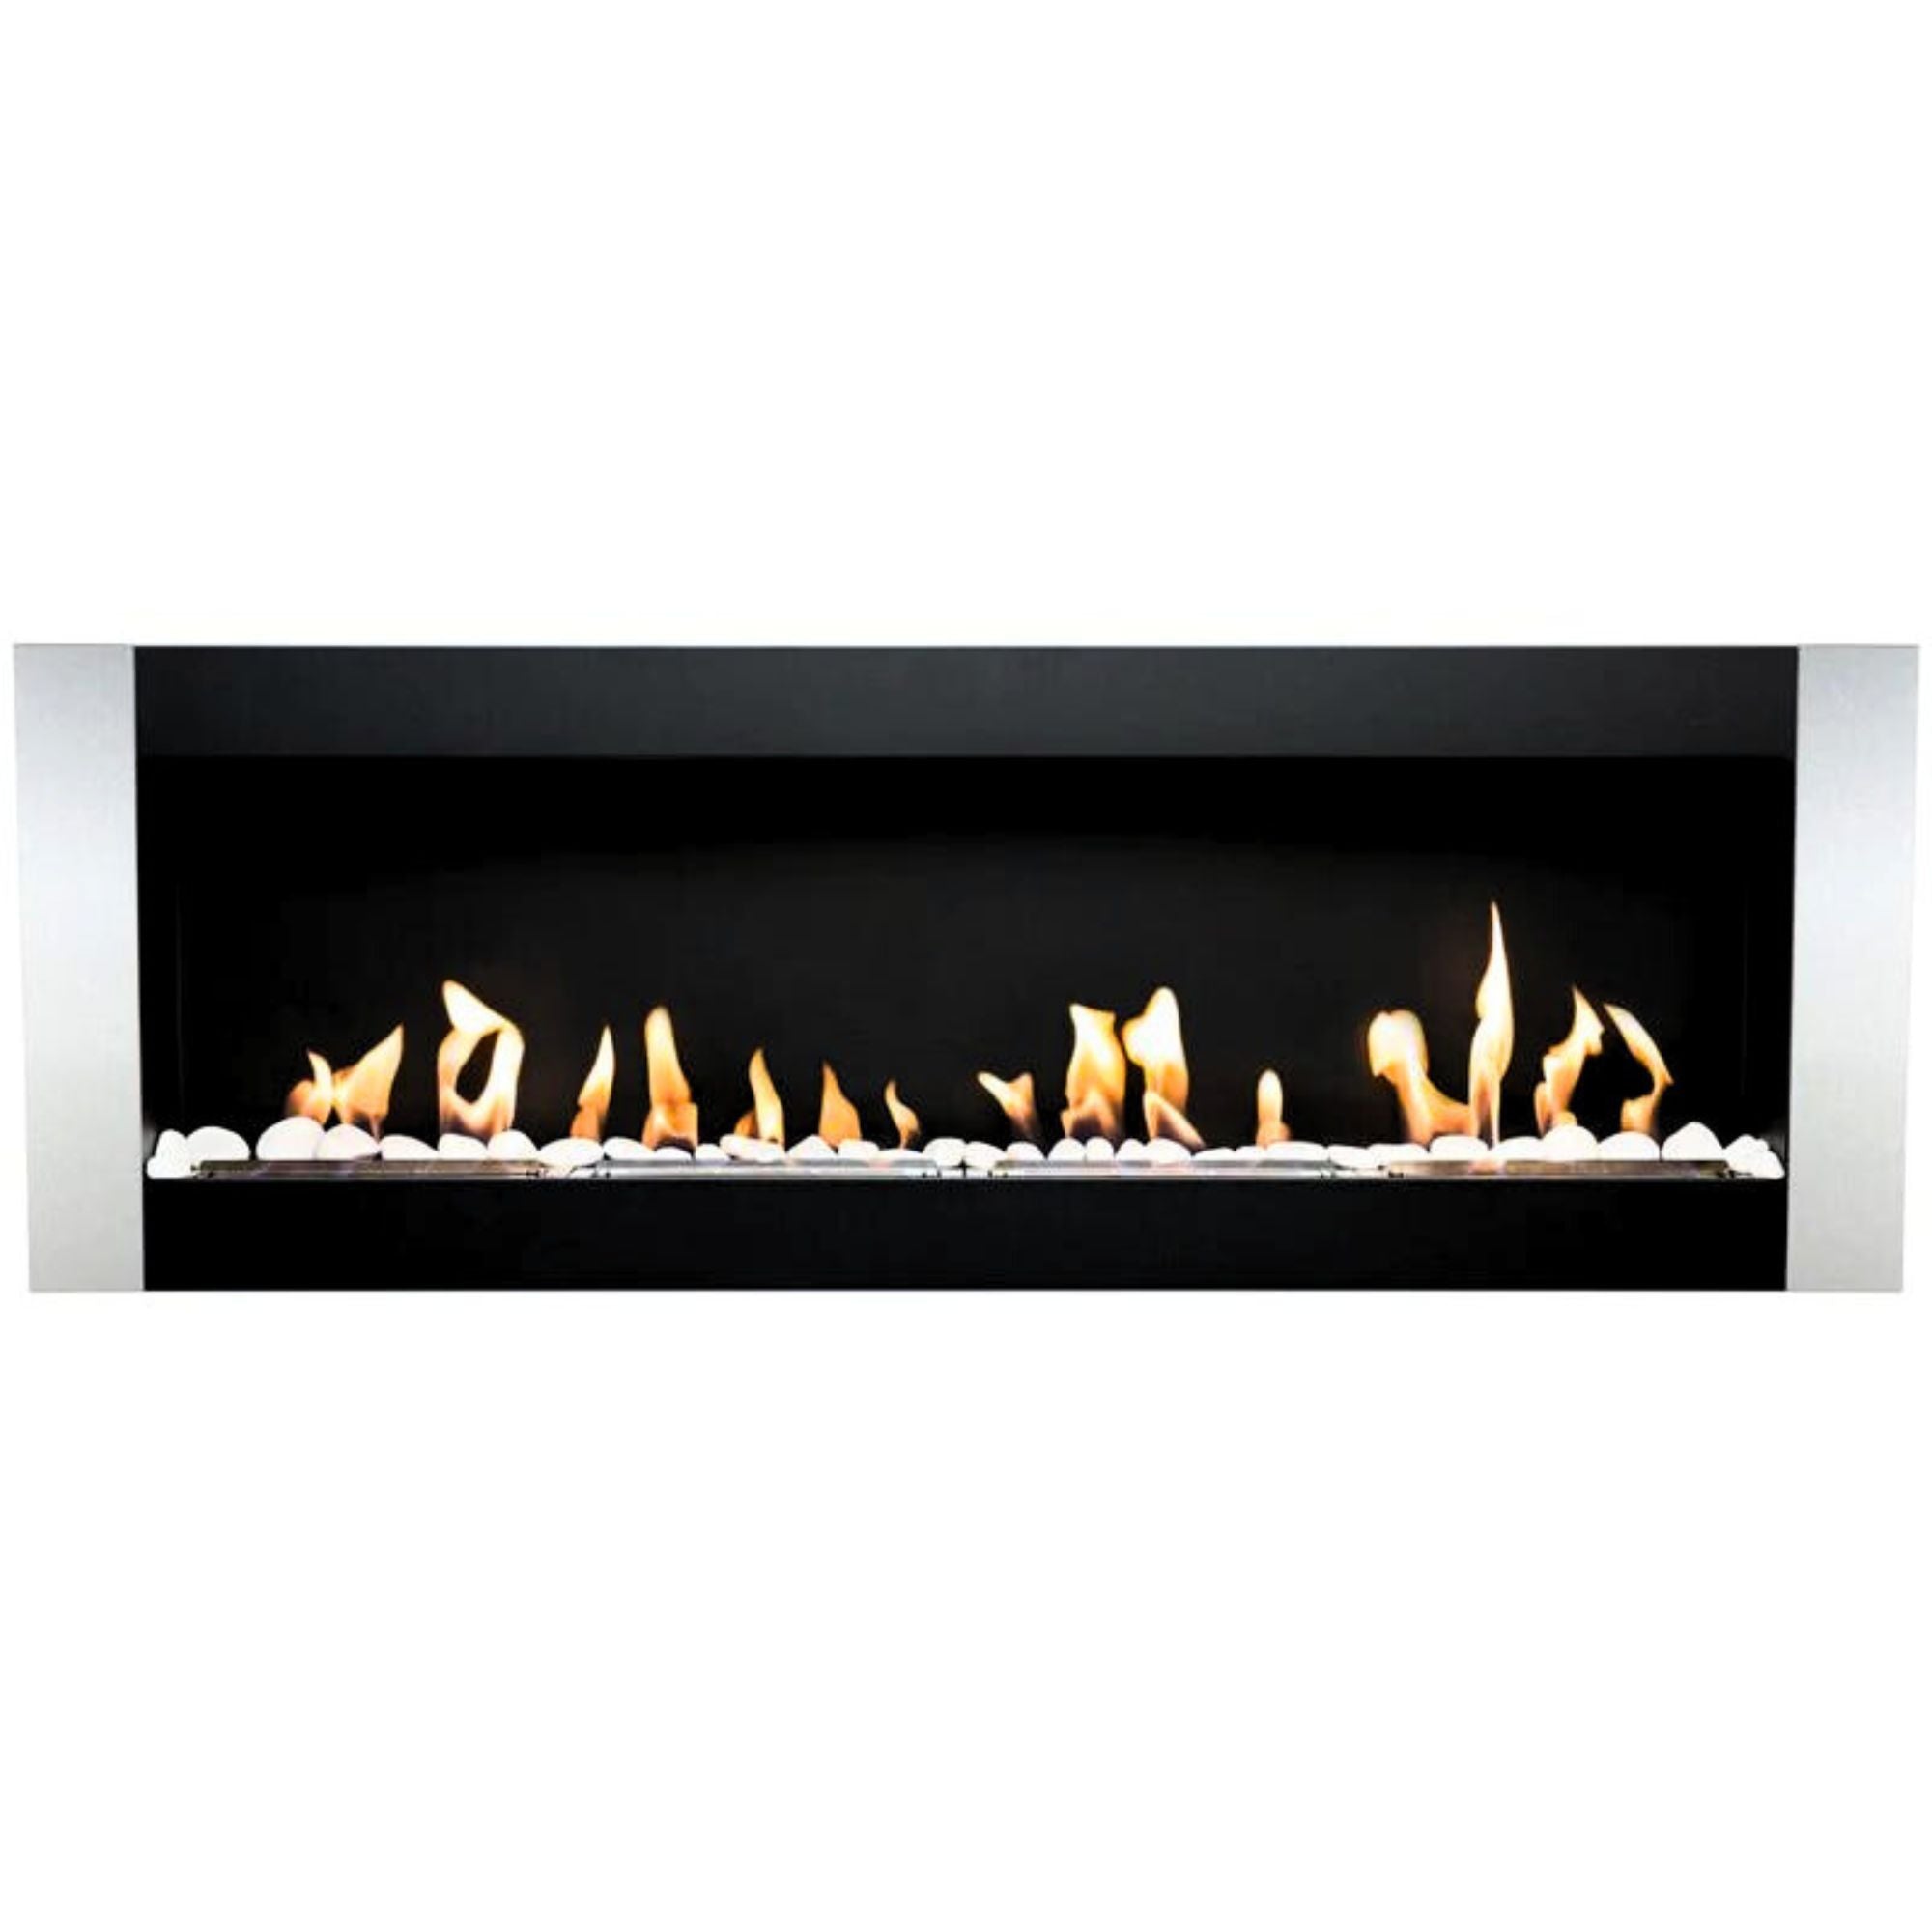 Nerez Bio-Ethanol Wall - Built-in fireplace 115 x 40 CM